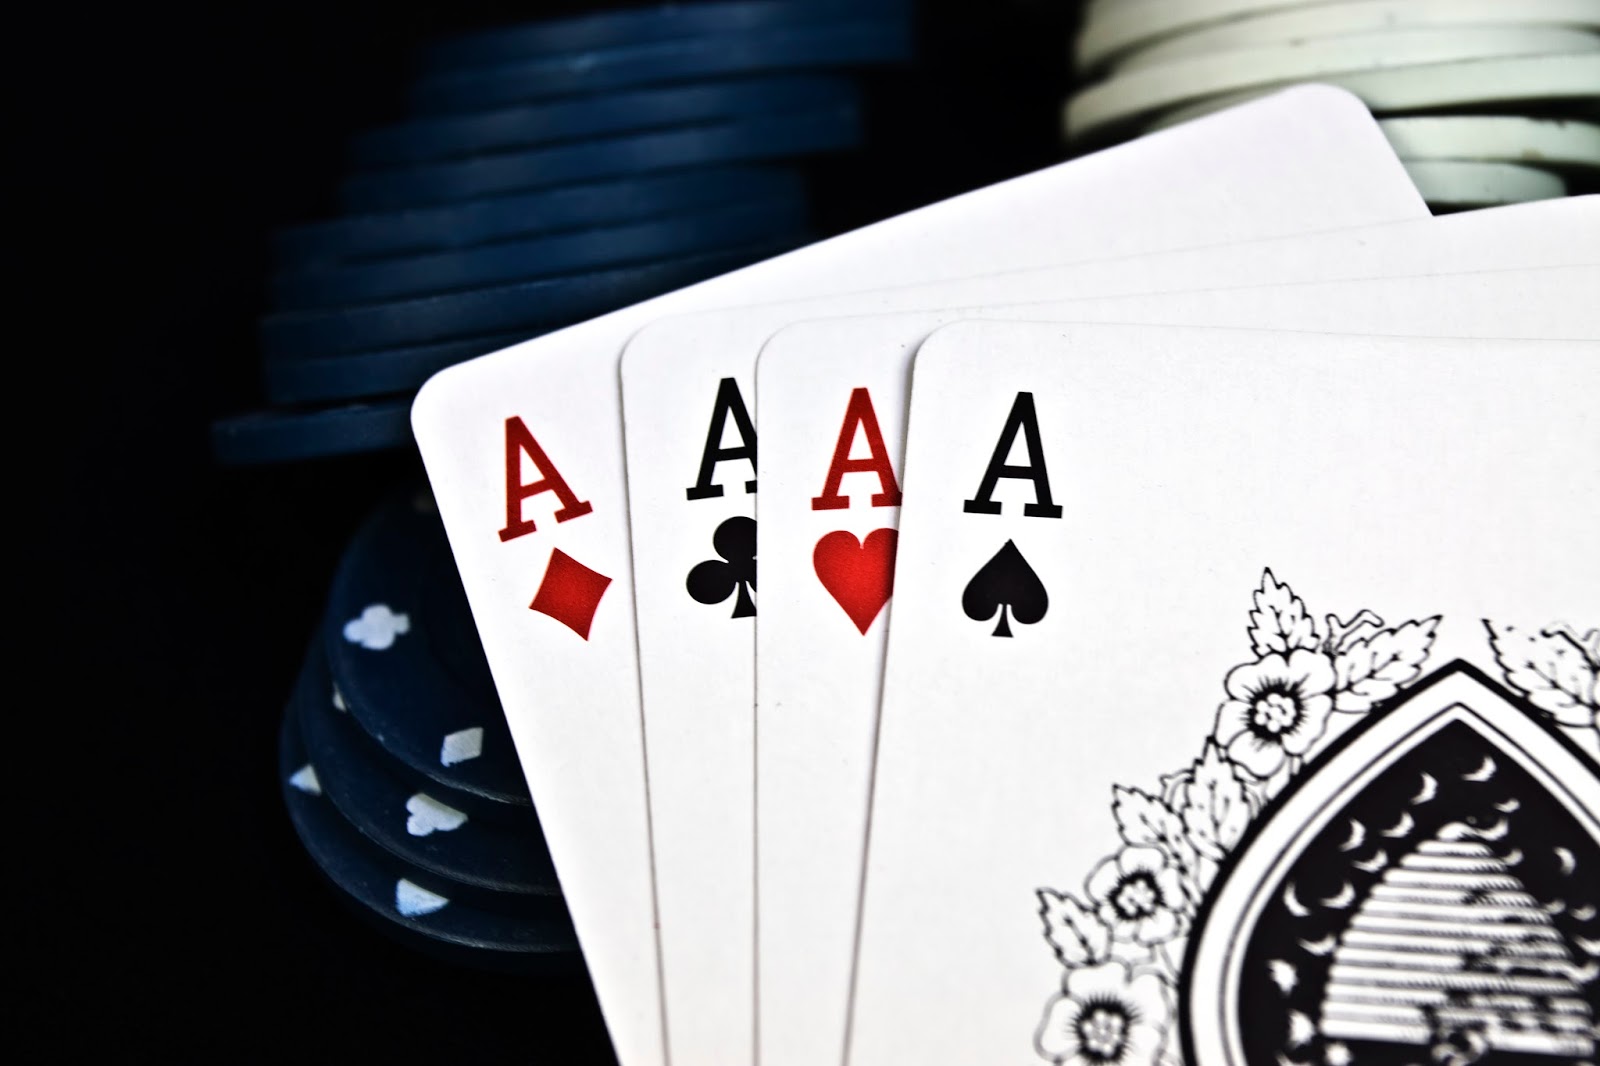 Три карты в покере